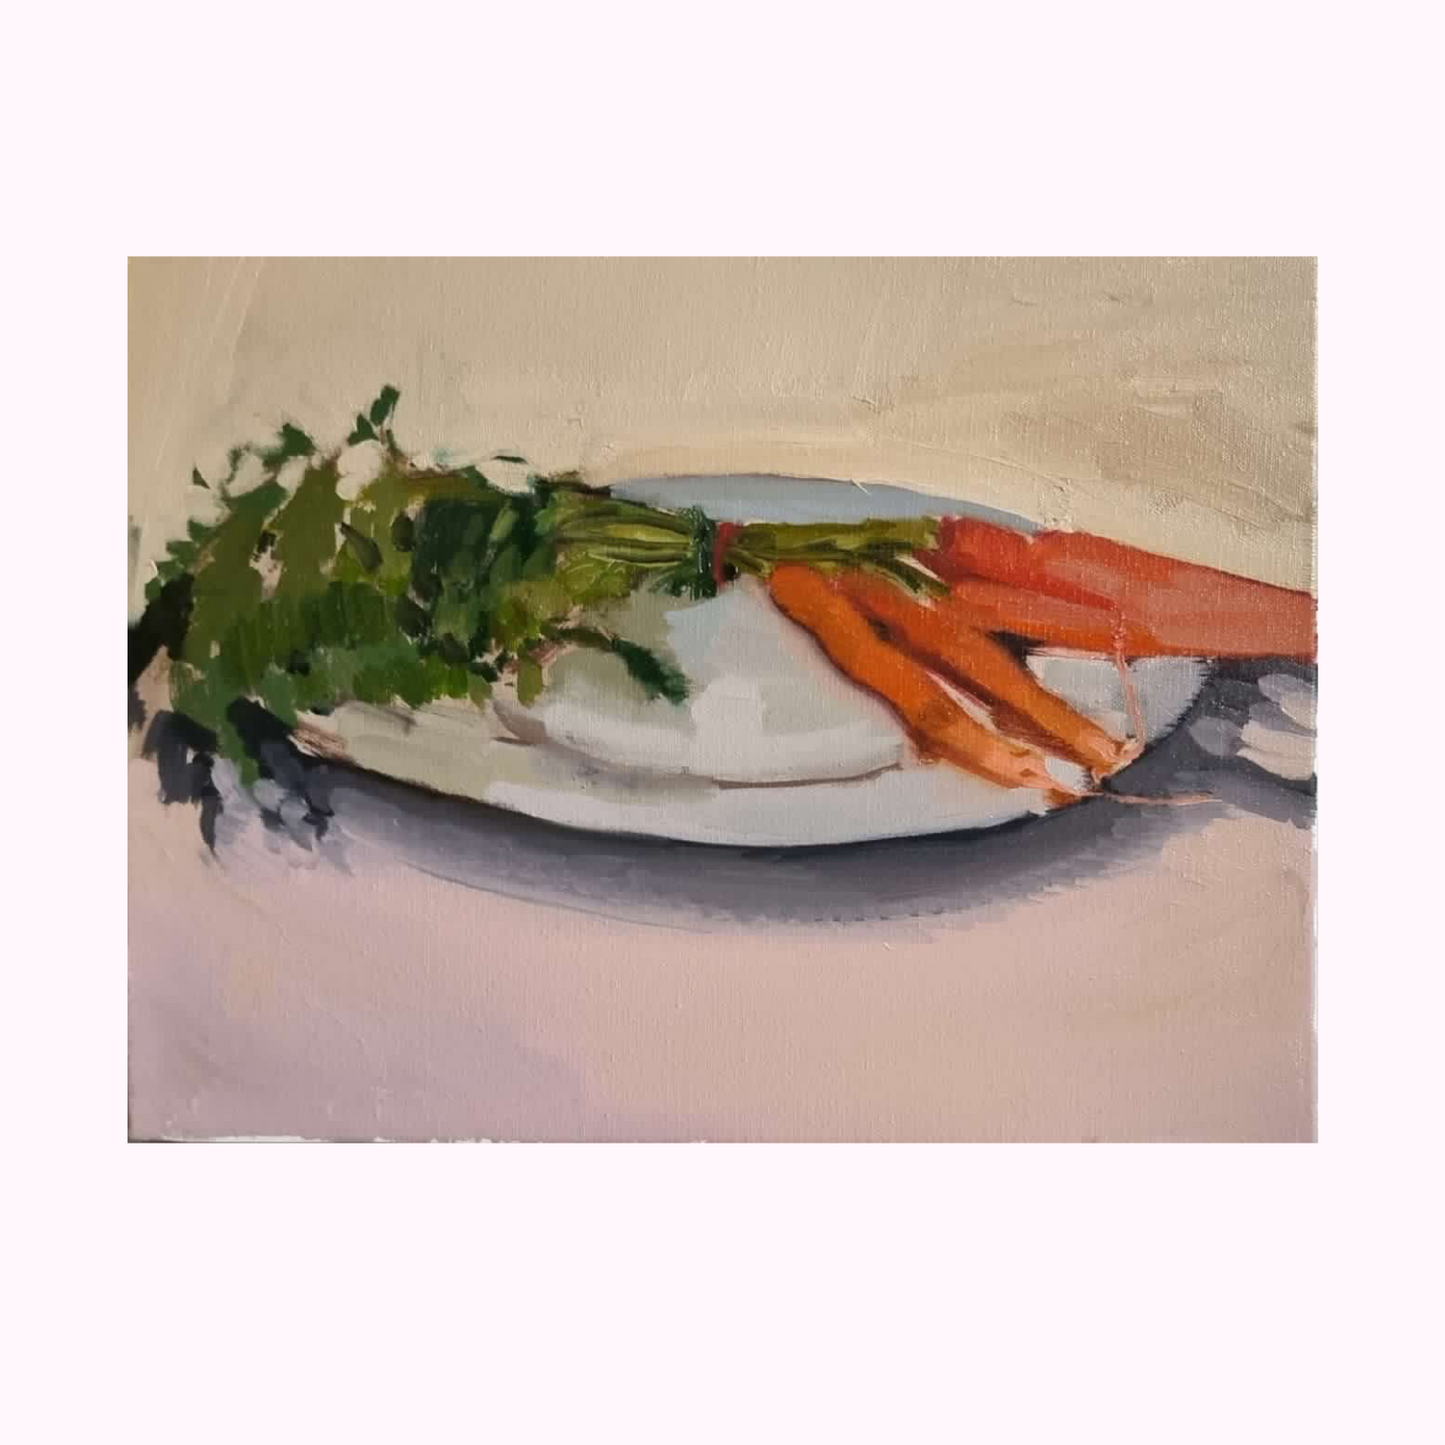 Baby Carrots still life by Ella Holme